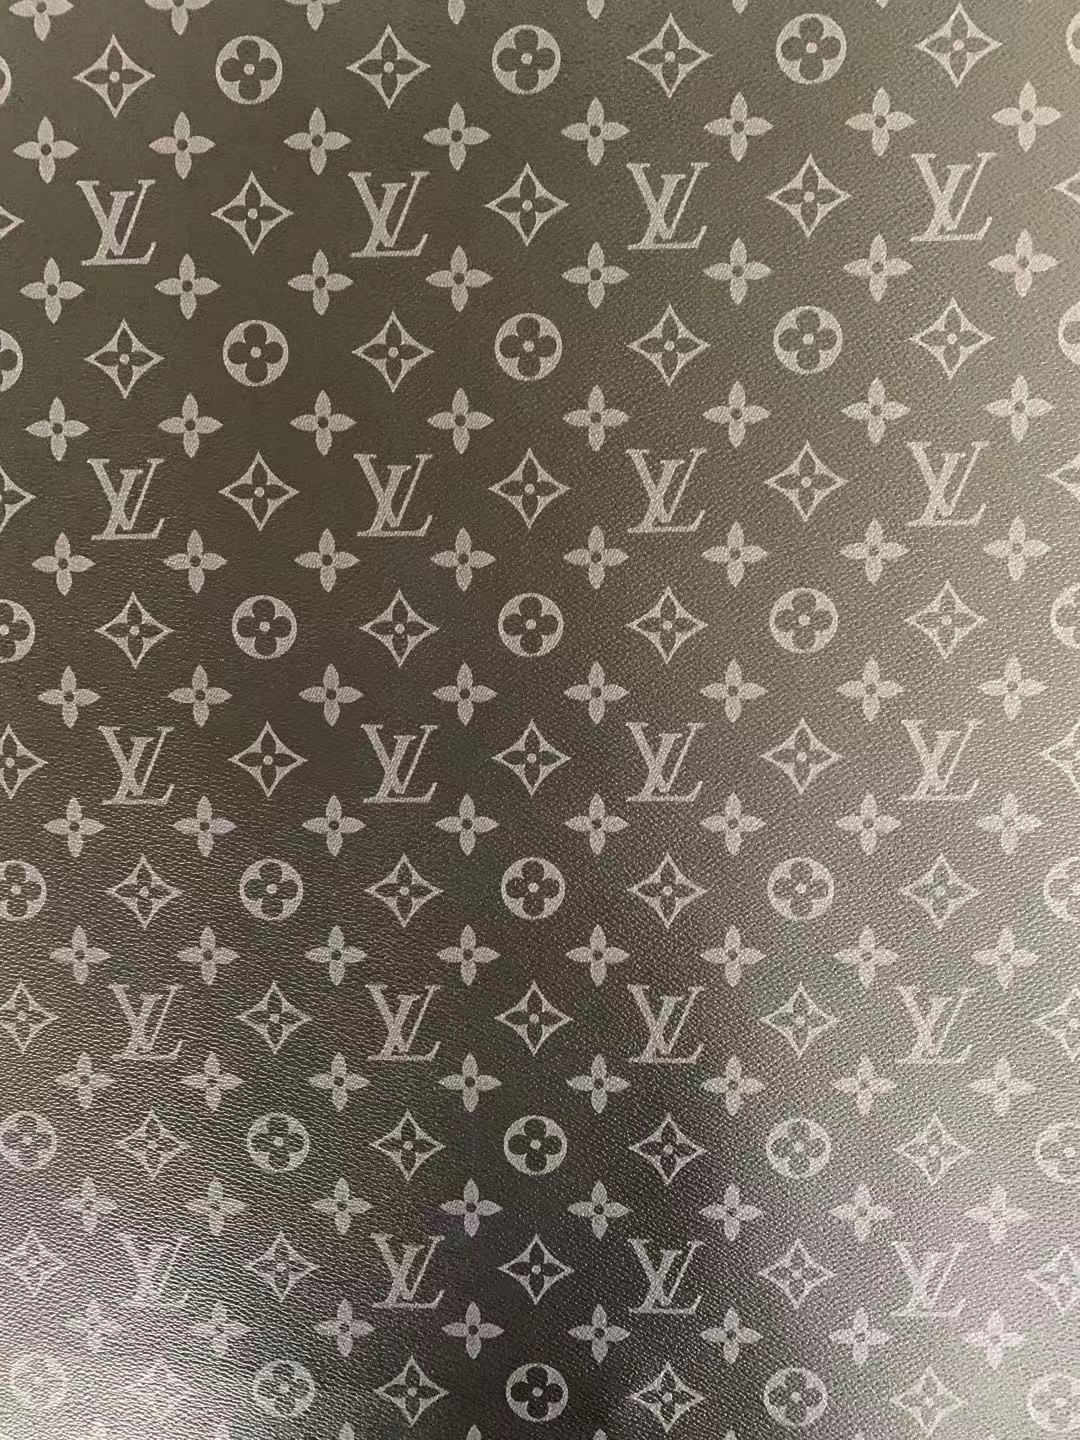 lv monogram fabric